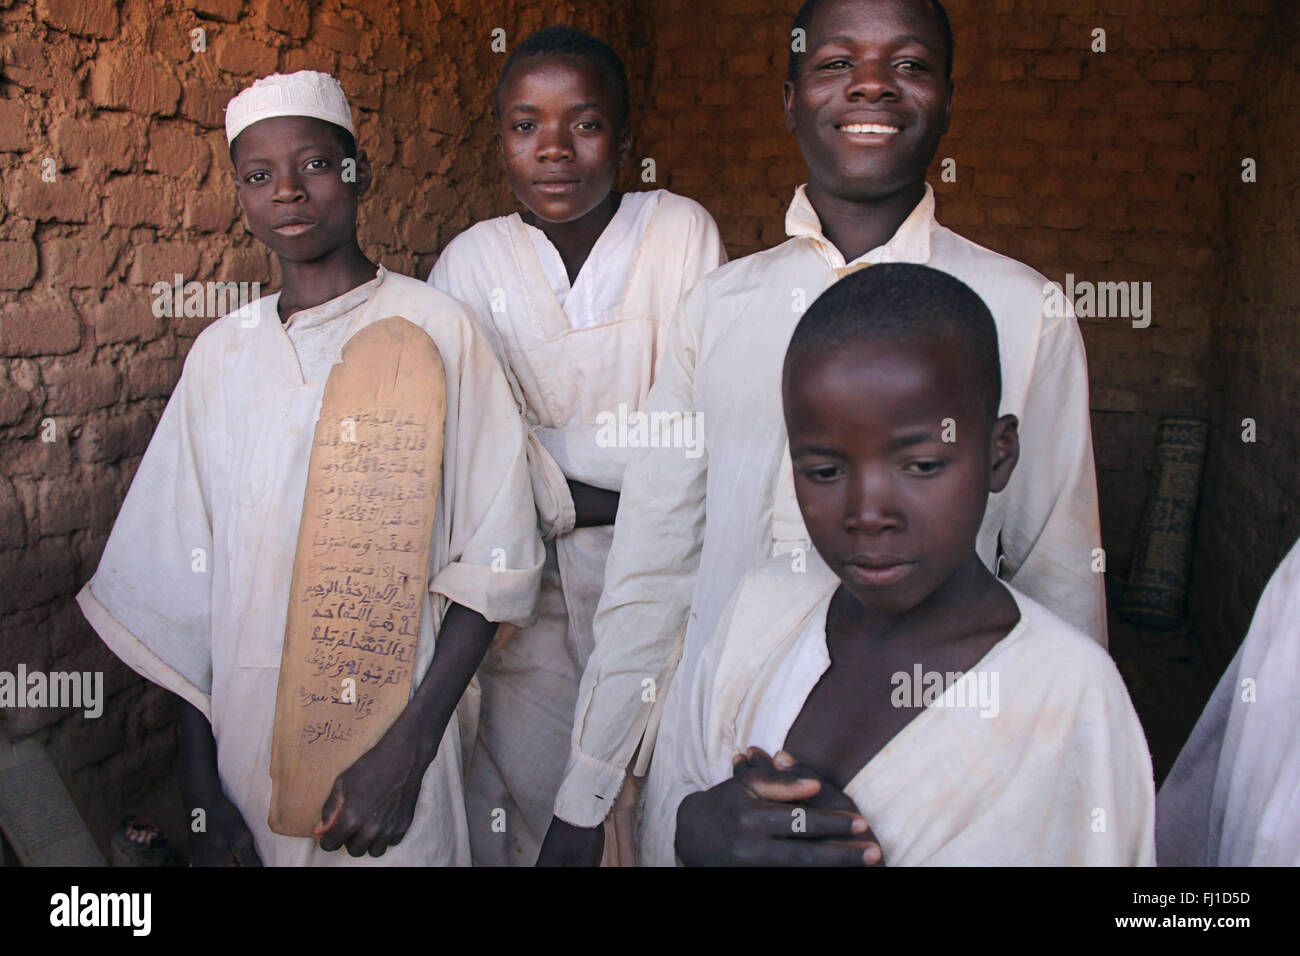 Un groupe de jeunes garçons de l'école coranique medressa / posent avec blanc vêtements traditionnels le vendredi à Bani , Burkina Faso Banque D'Images